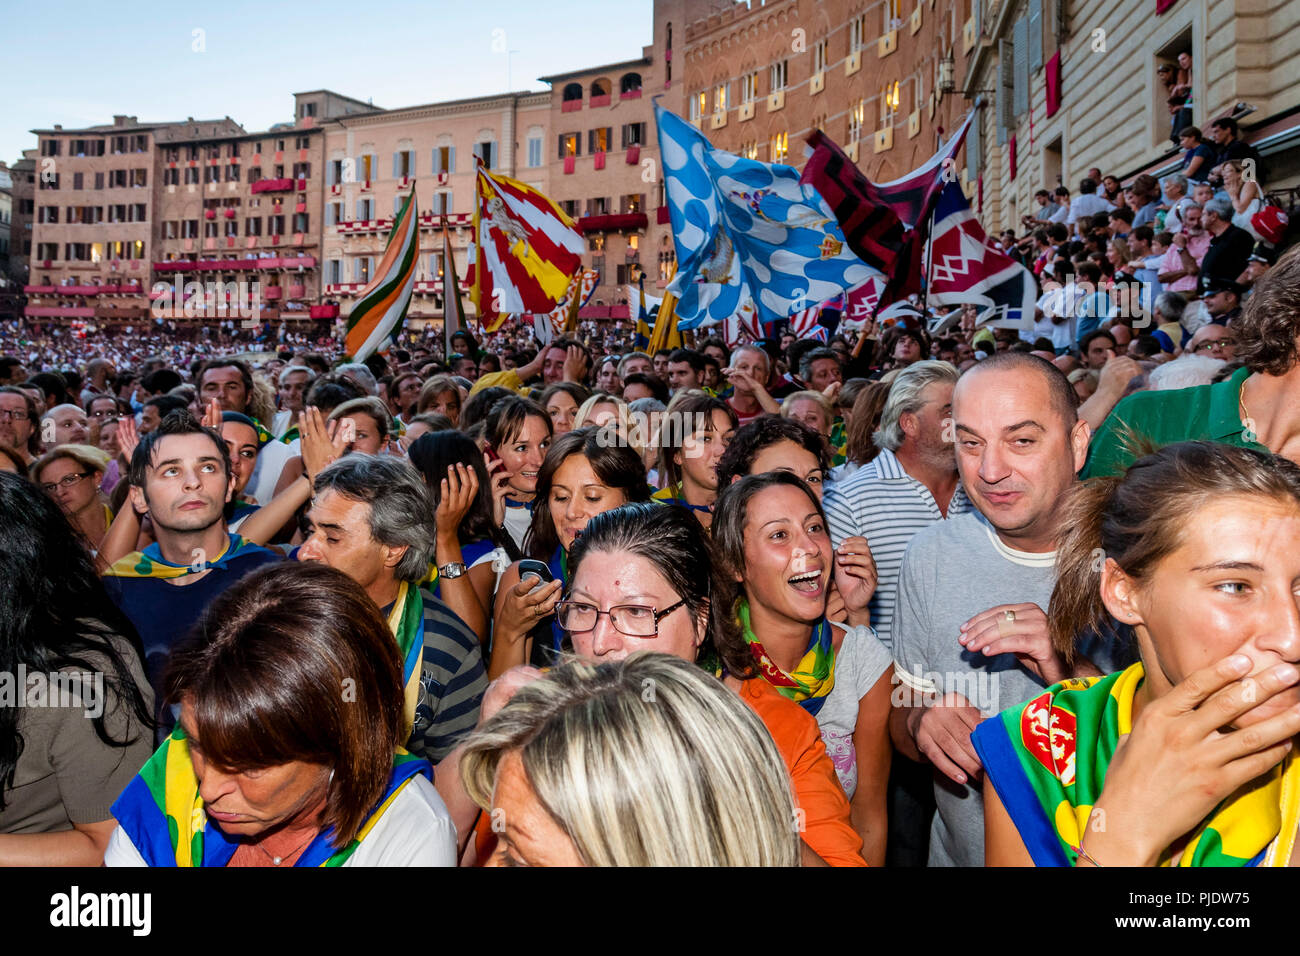 Les membres de l'Bruco (Caterpillar) via quitter la Piazza del Campo après avoir remporté le Palio, le Palio di Siena, Sienne, Italie Banque D'Images